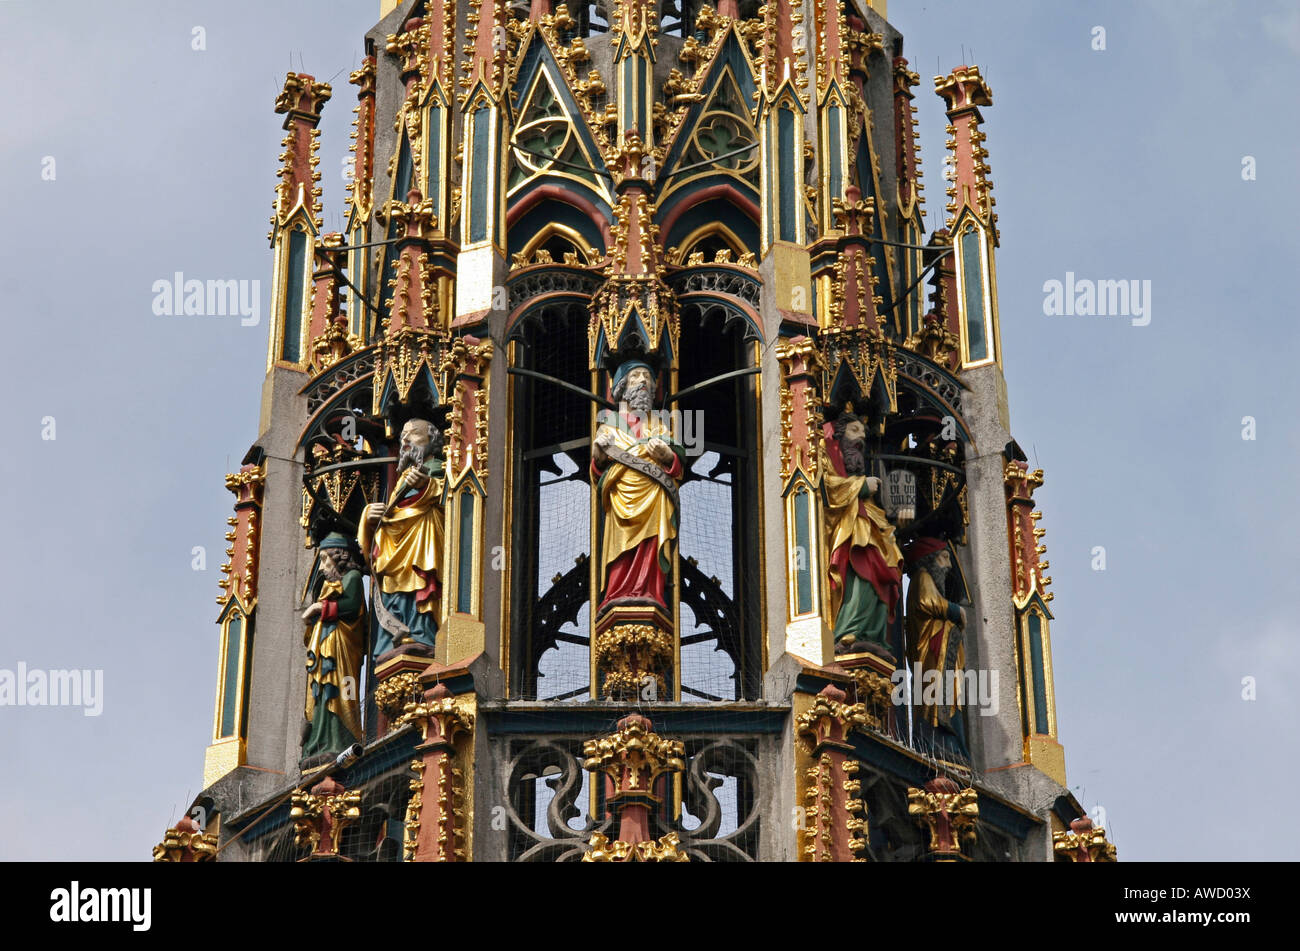 Ornate fountain avec figures de pierre de la forme d'un clocher gothique, Nuremberg, Franconia, Bavaria, Germany, Europe Banque D'Images